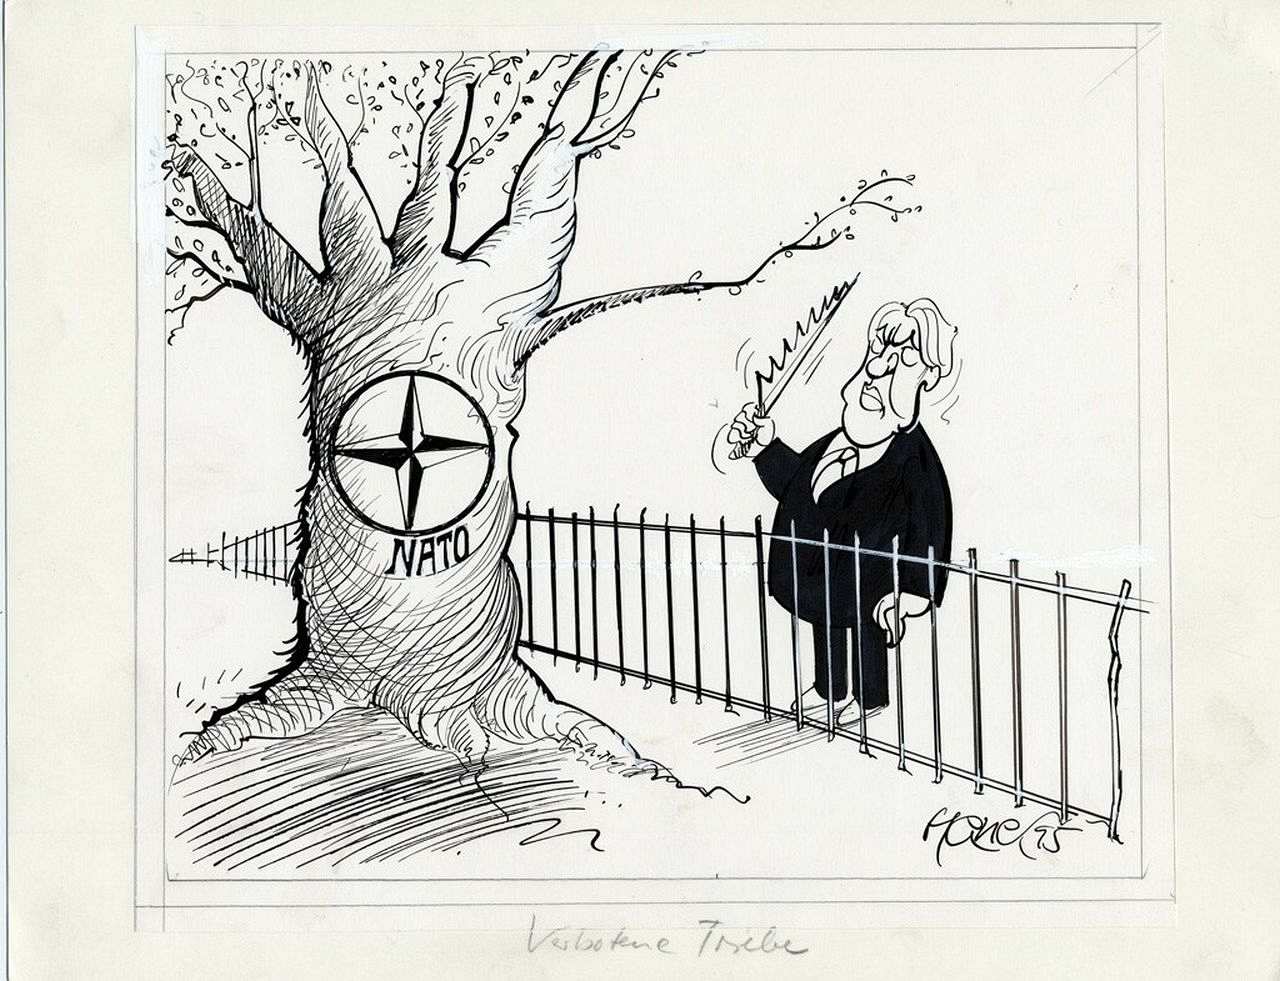 Karikatur von Walter Hanel zur NATO-Osterweiterung.